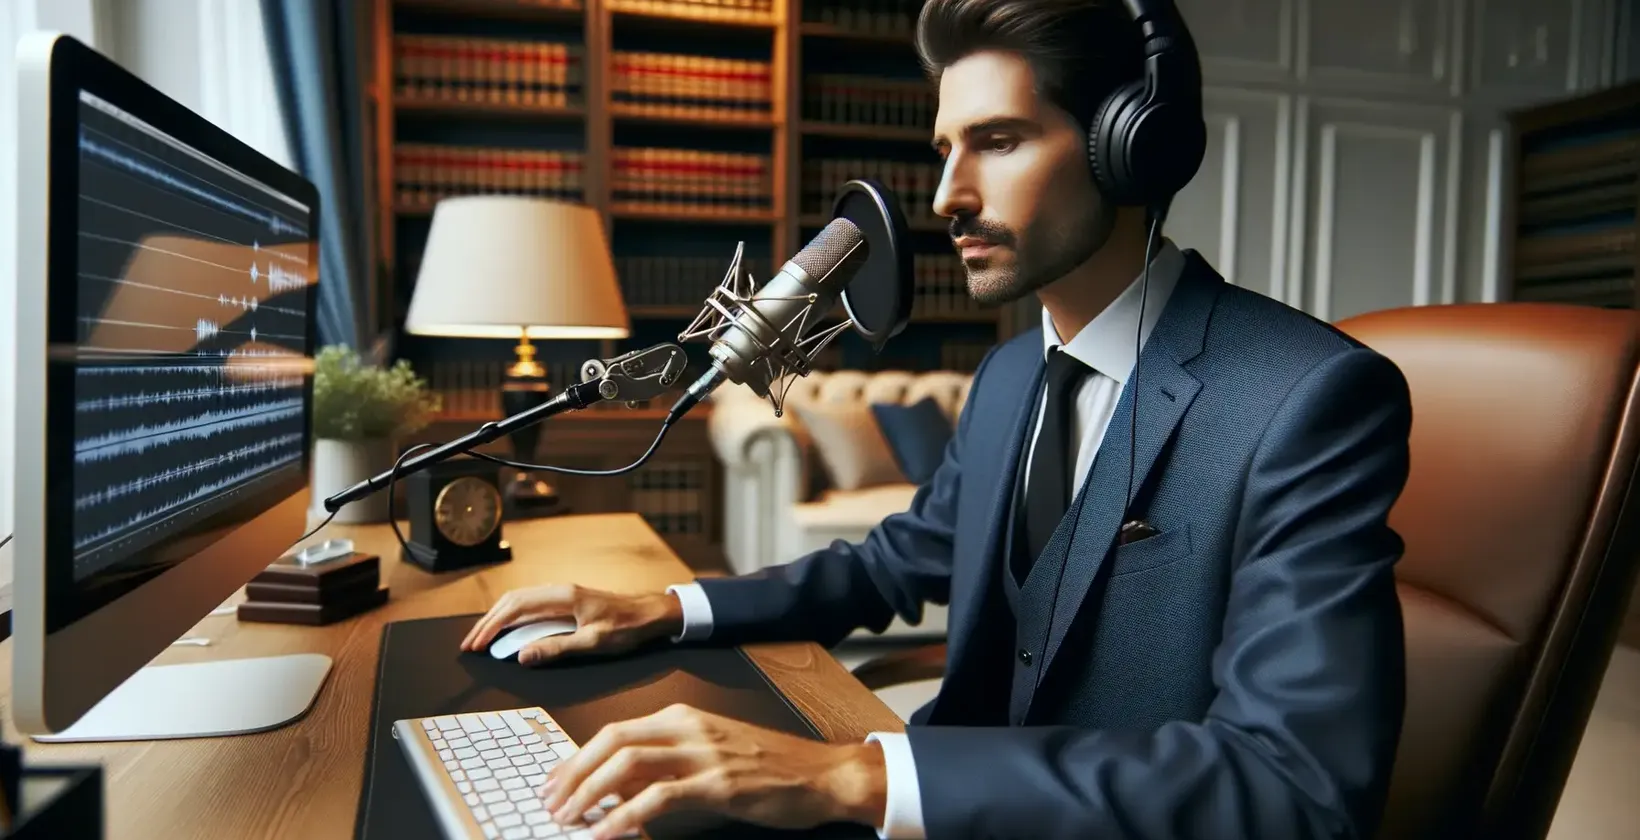 Prawnik w garniturze używający oprogramowania do transkrypcji do analizy nagrań prawnych.